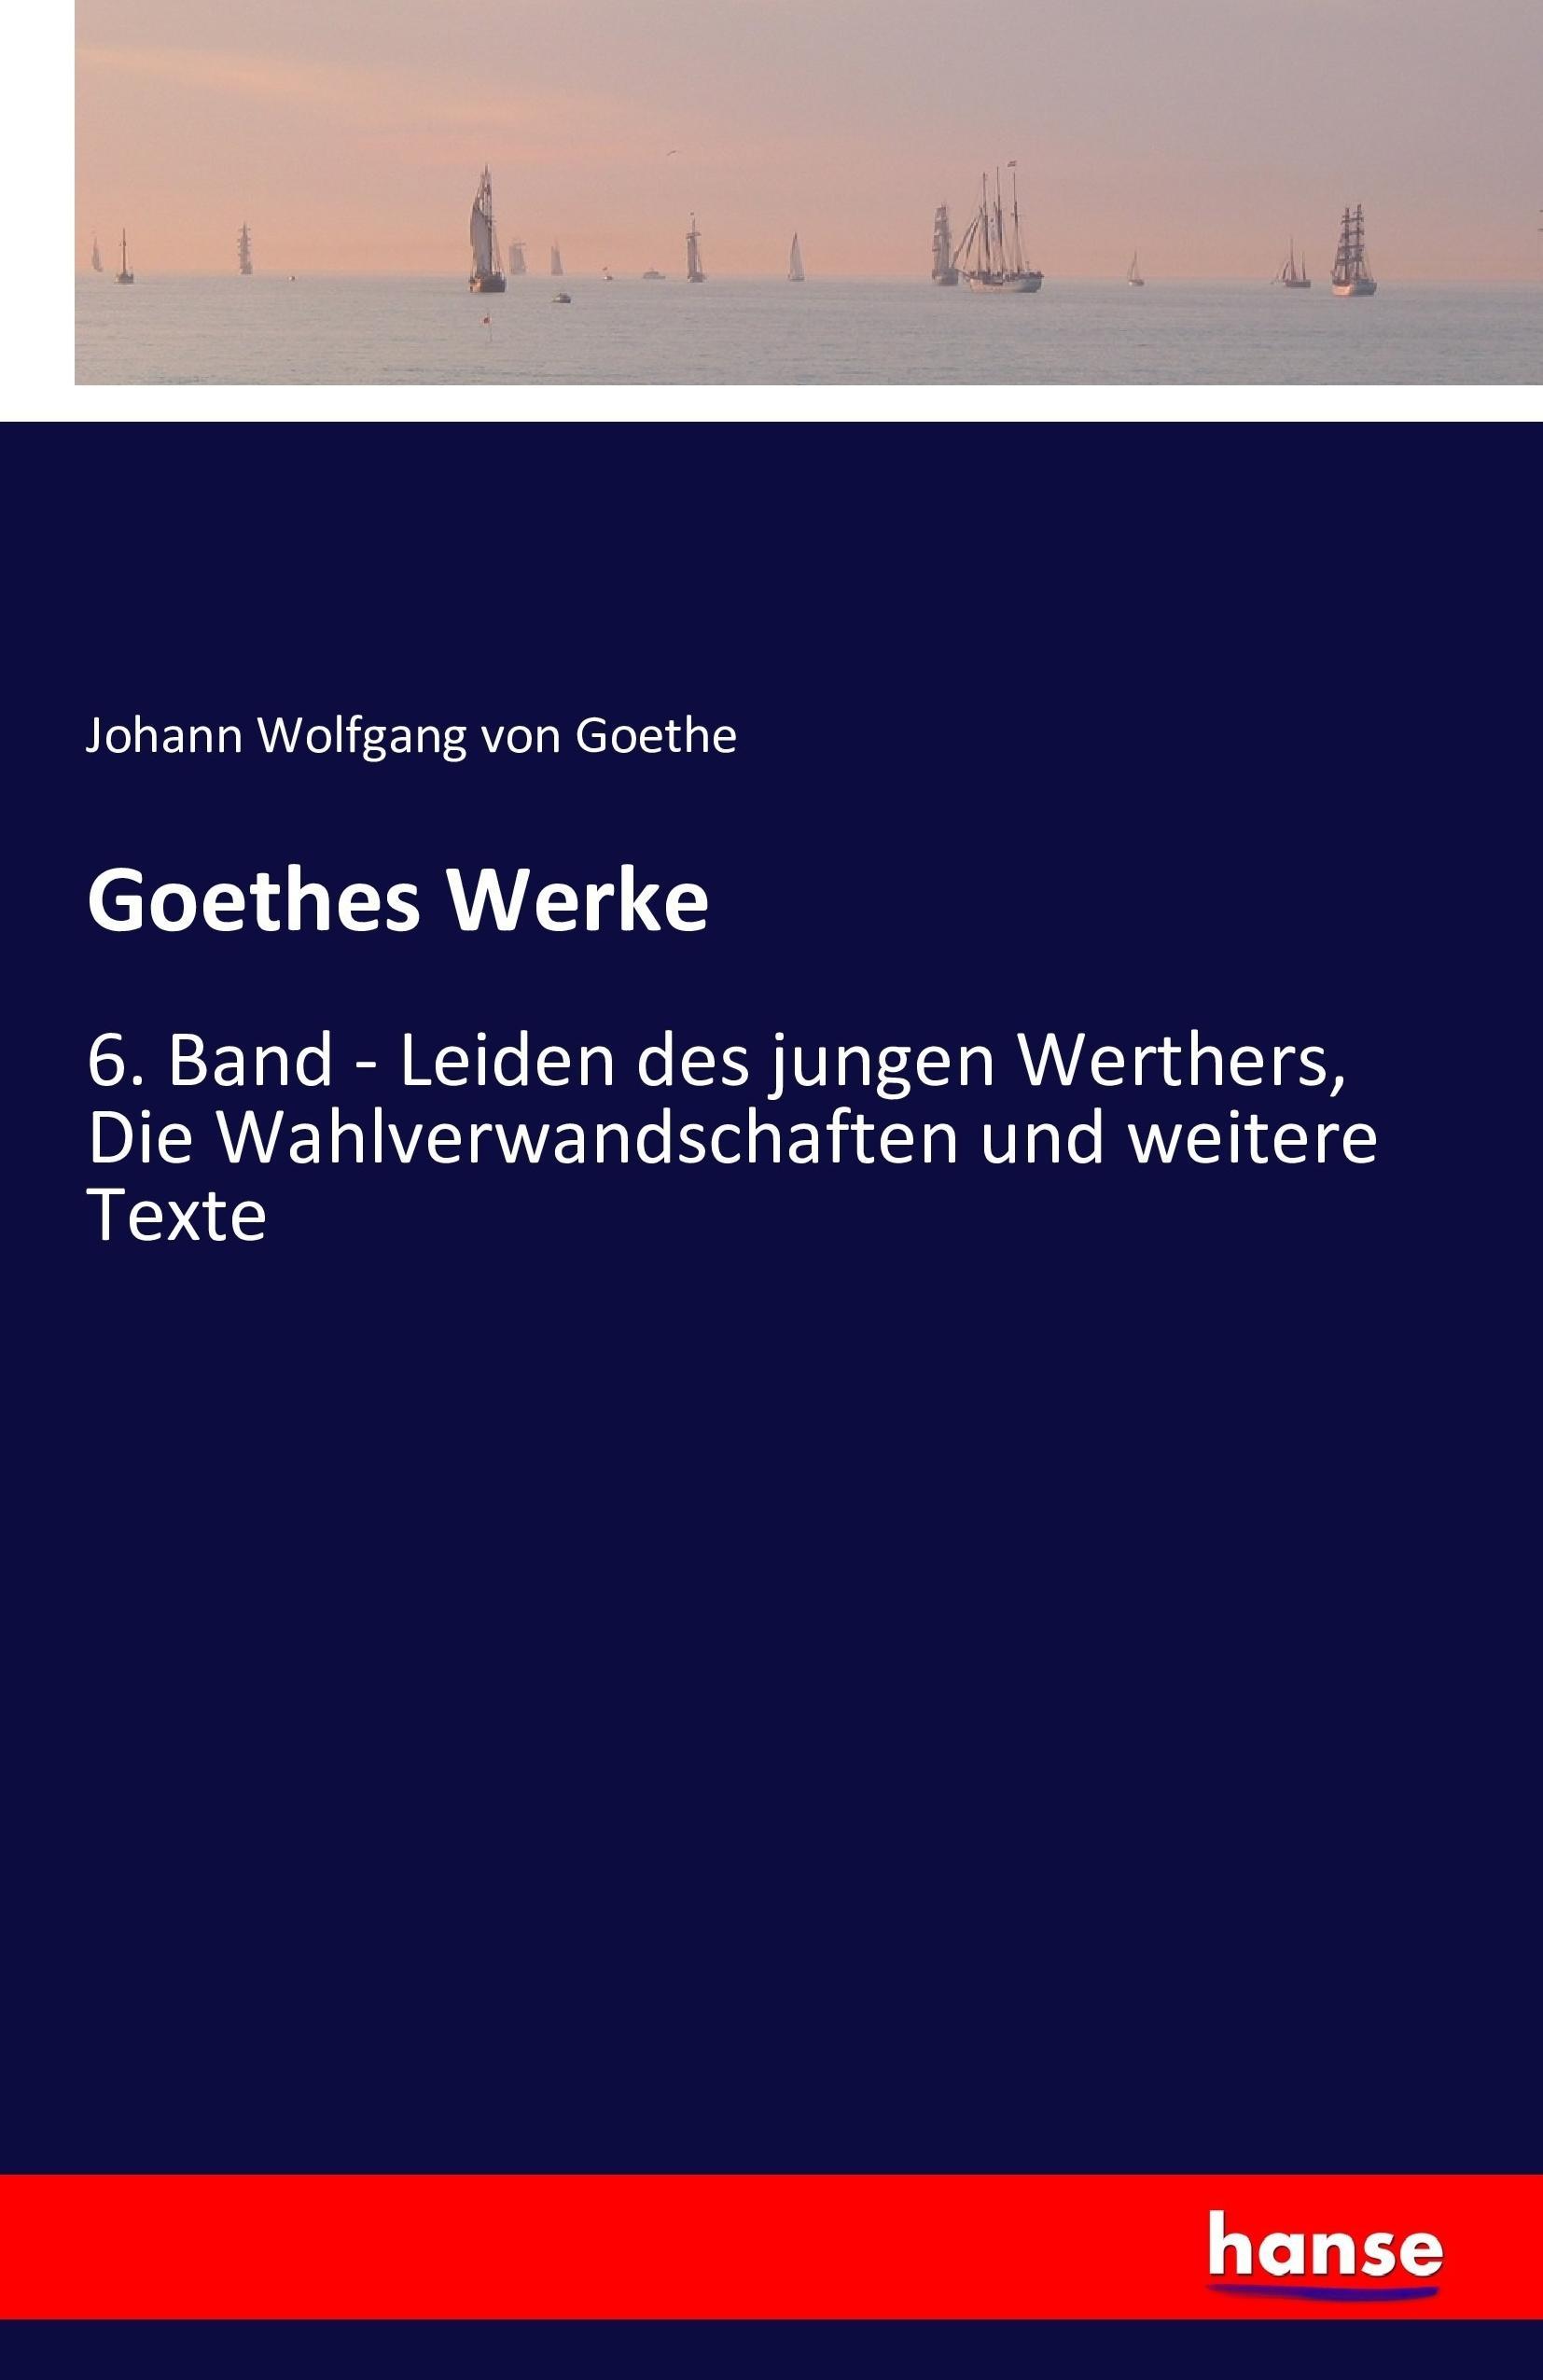 Goethes Werke | 6. Band - Leiden des jungen Werthers, Die Wahlverwandschaften und weitere Texte | Johann Wolfgang von Goethe | Taschenbuch | Paperback | 672 S. | Deutsch | 2016 | hansebooks - Goethe, Johann Wolfgang von